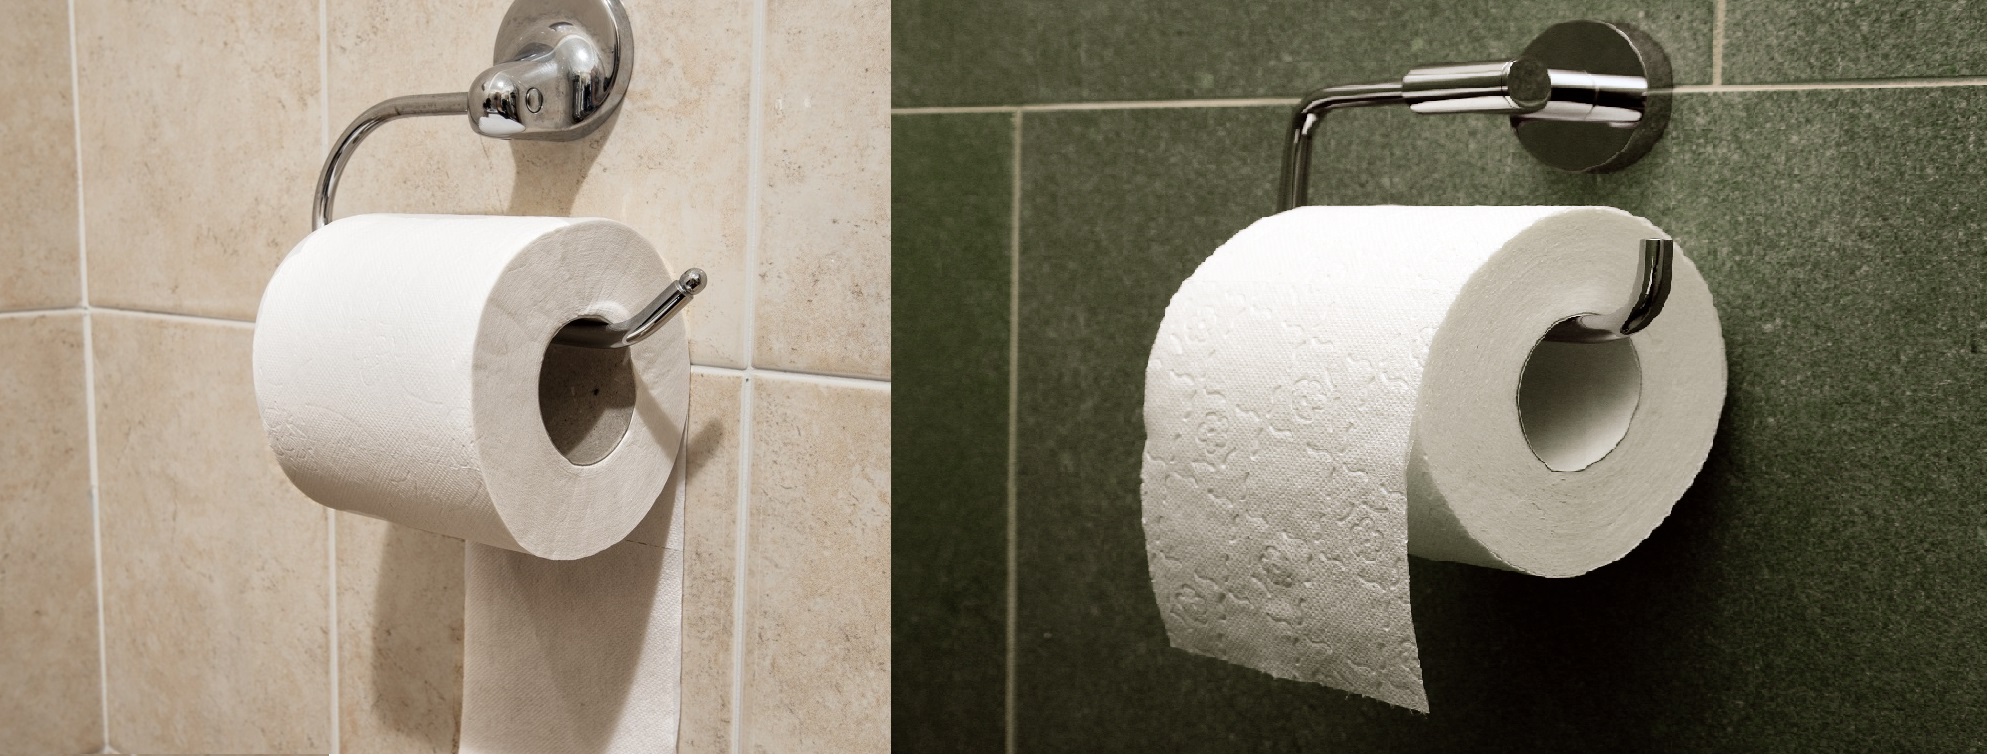 Te hogyan teszed fel a tartójára a WC-papírt? Vigyázz, árulkodik rólad -  Blikk Rúzs